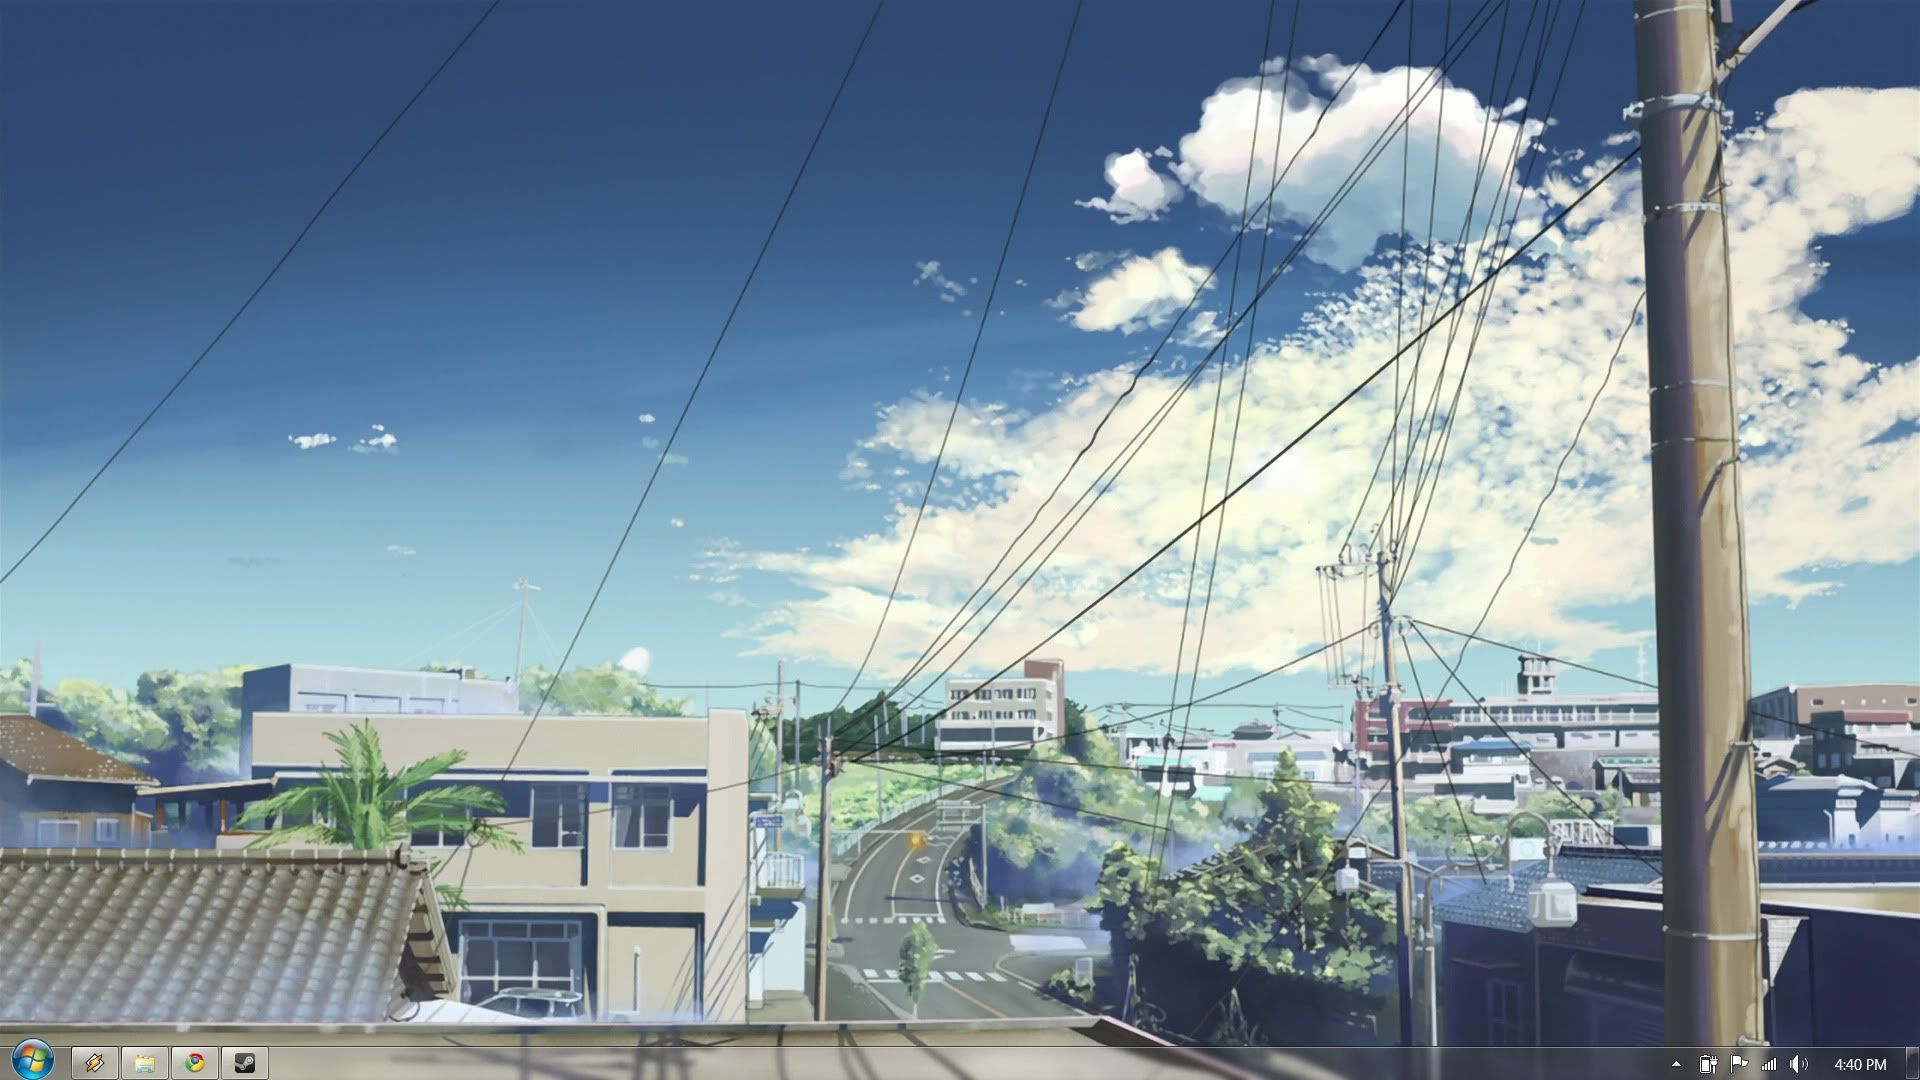 Aesthetic Anime Desktop Wallpaper